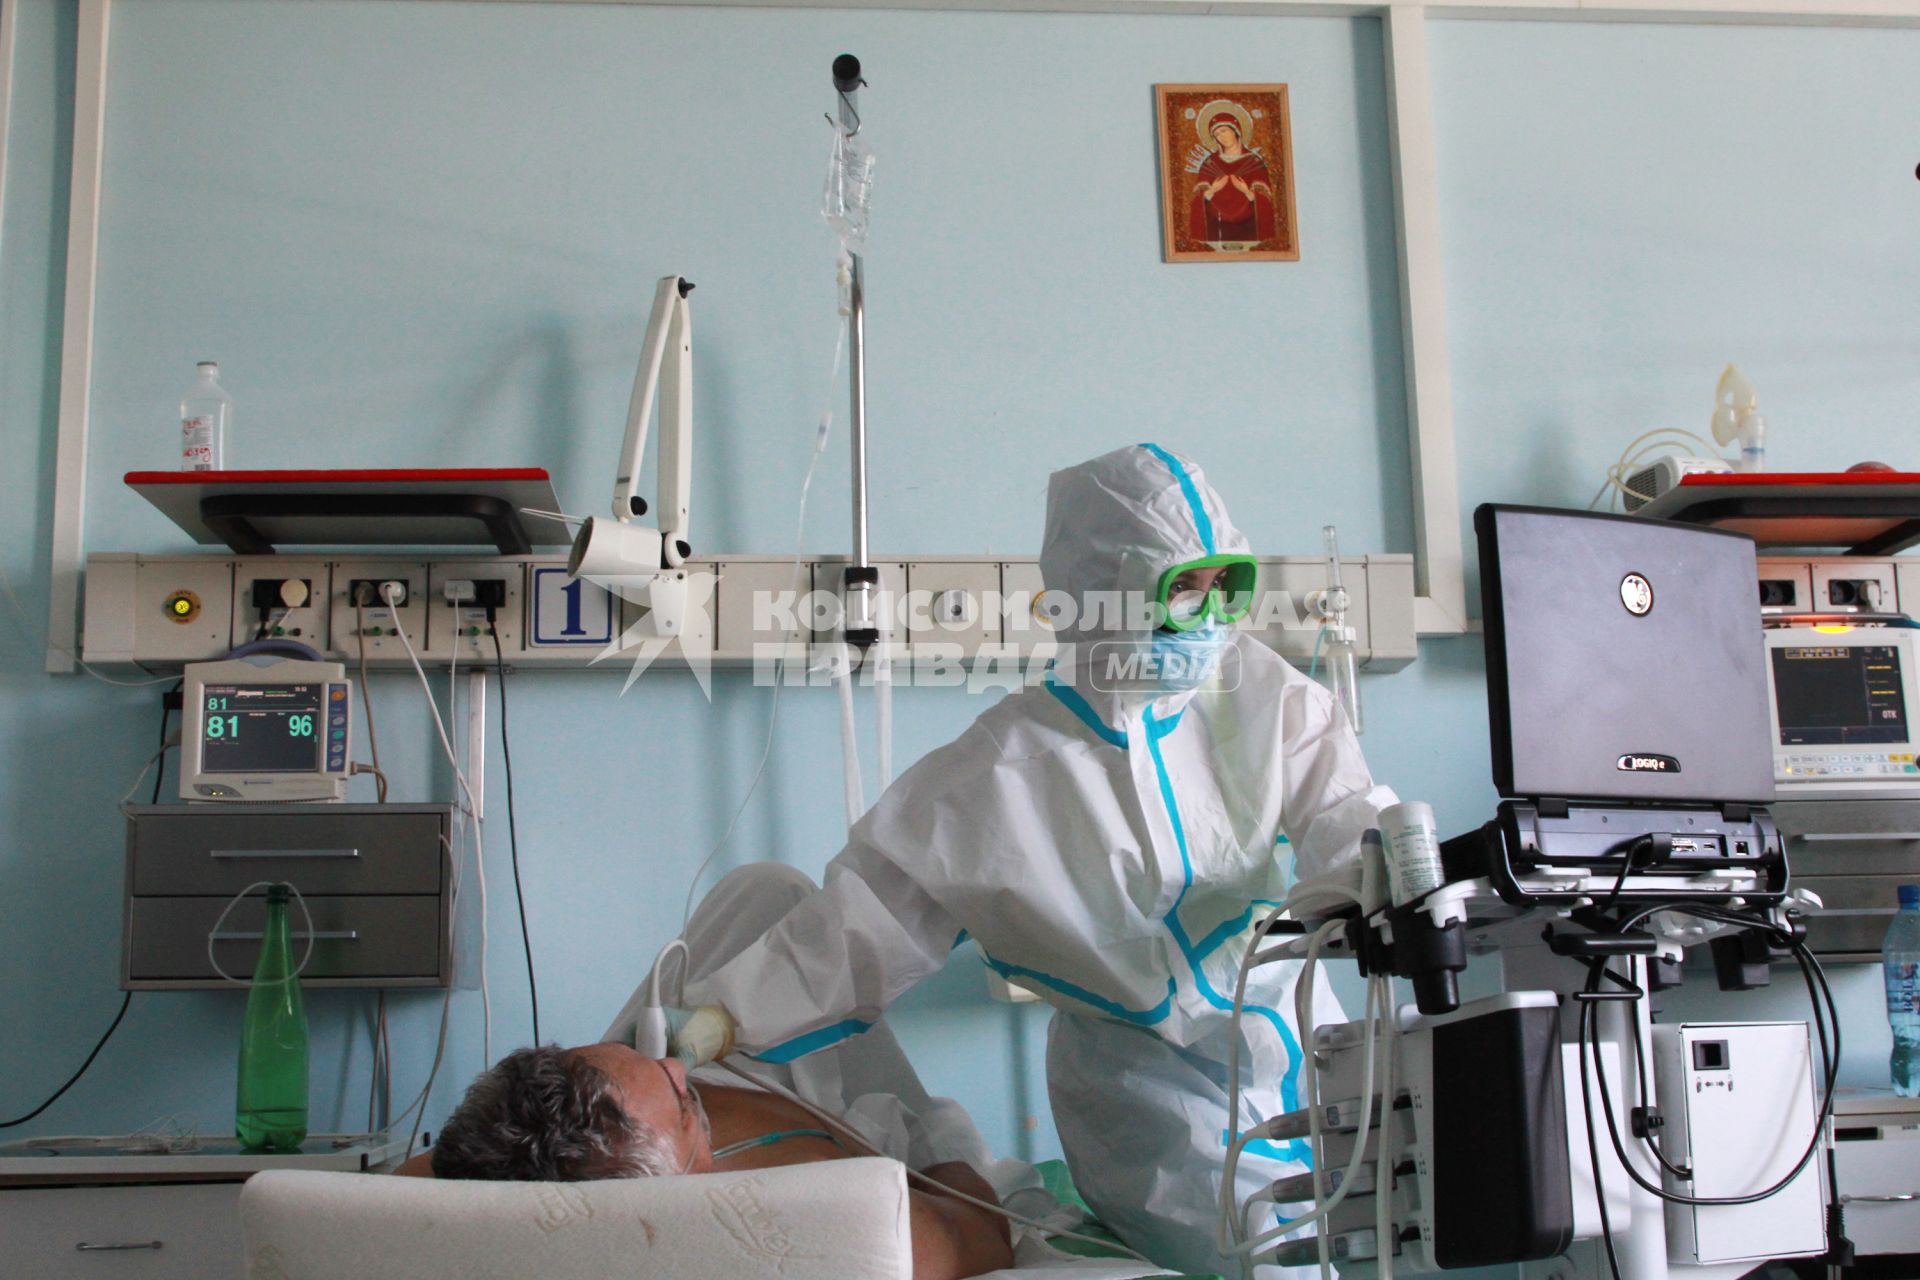 Иркутск. Городская клиническая больница №1. Врач обследует пациента отделения для зараженных коронавирусной инфекцией COVID-19.